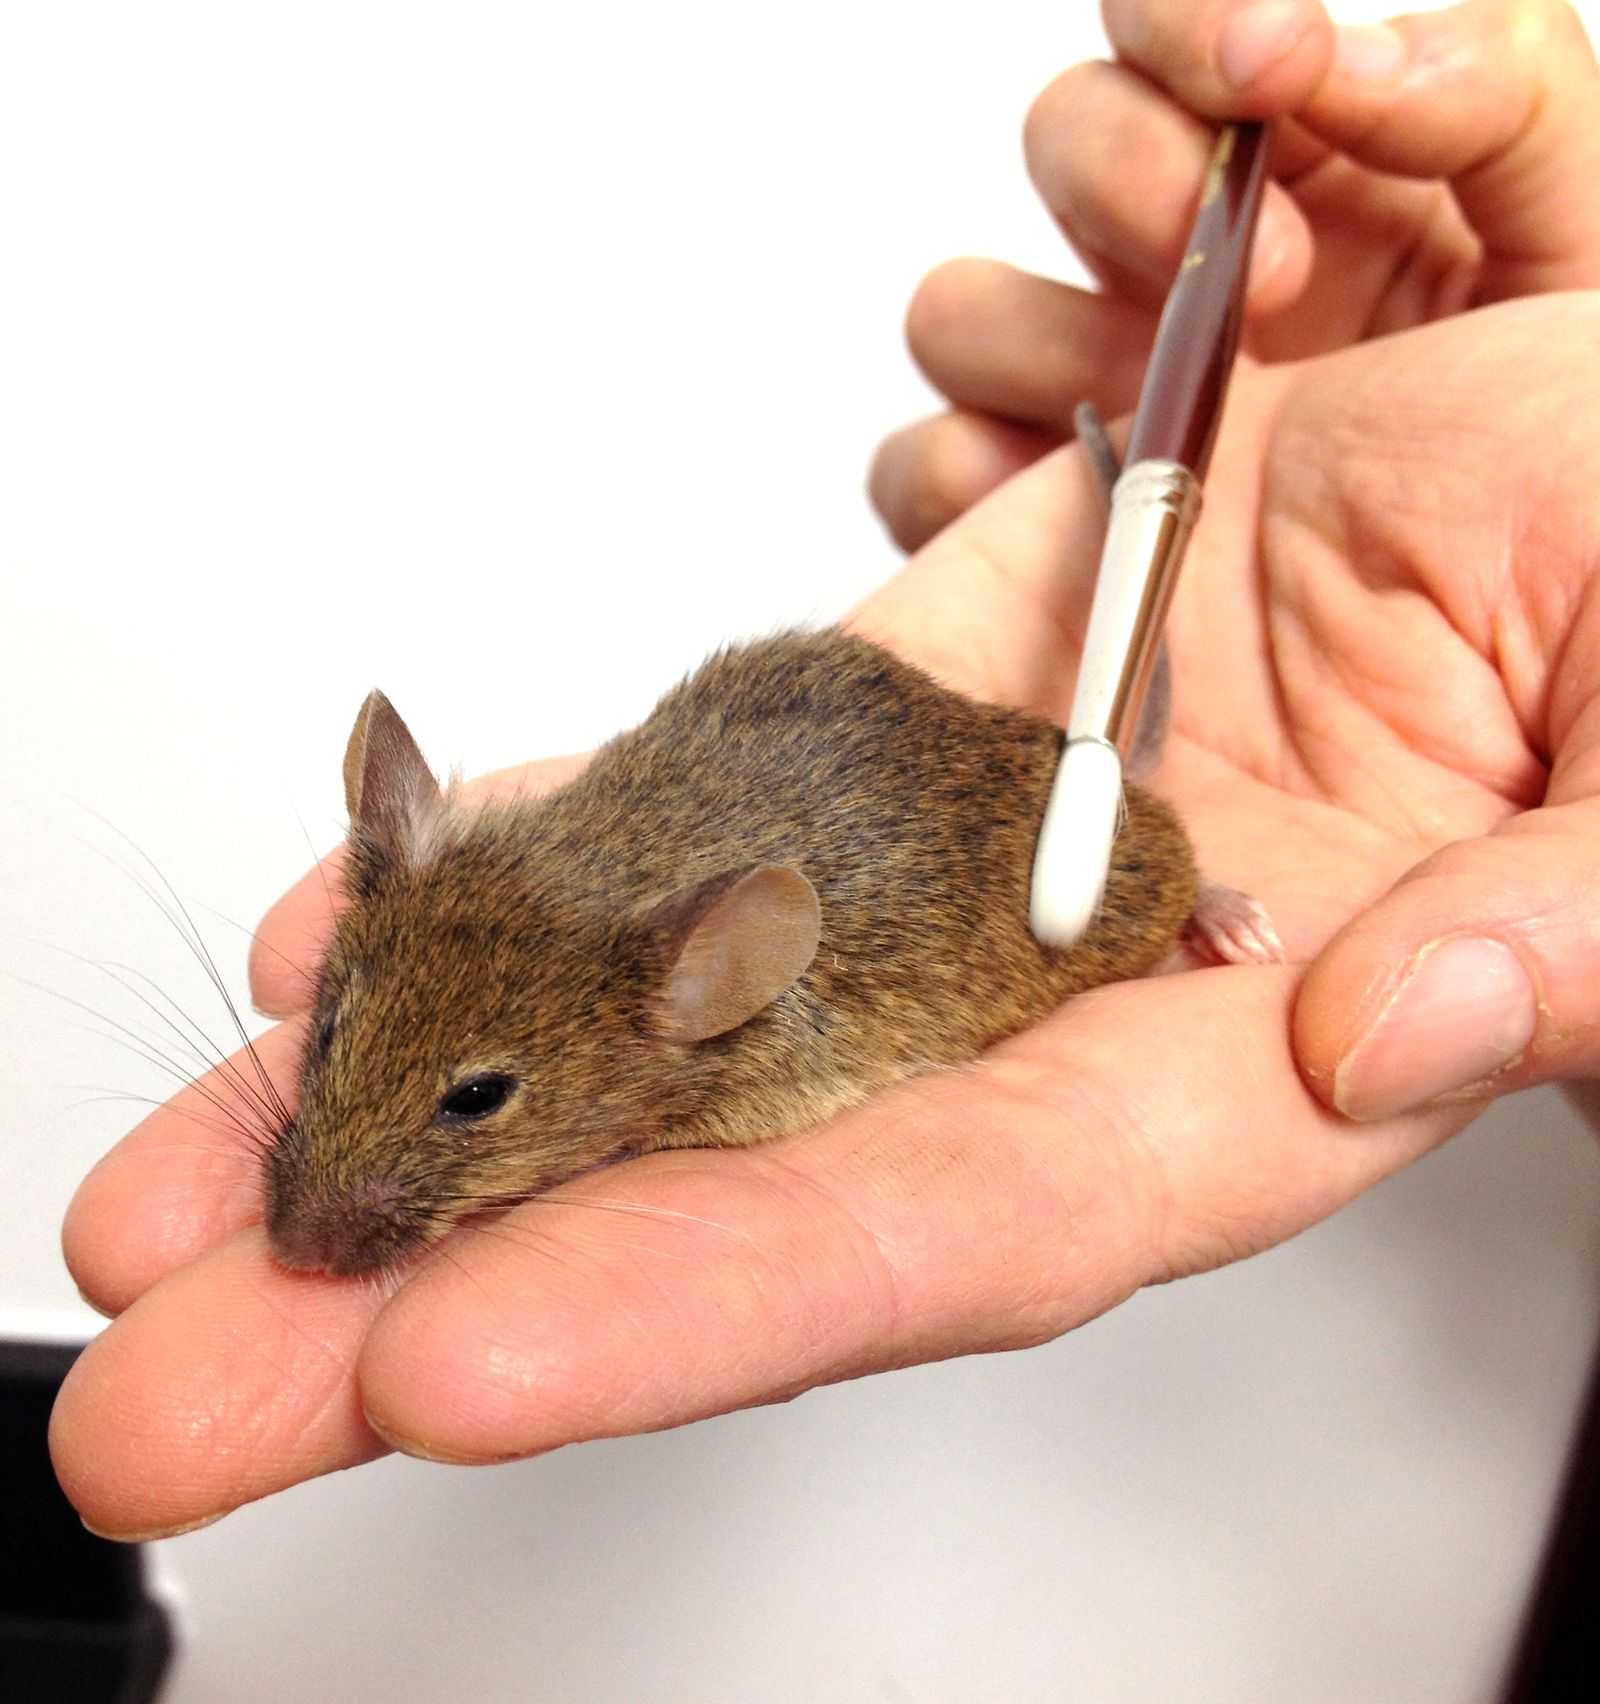 Учёные нашли в коже мышей клетки удовольствия